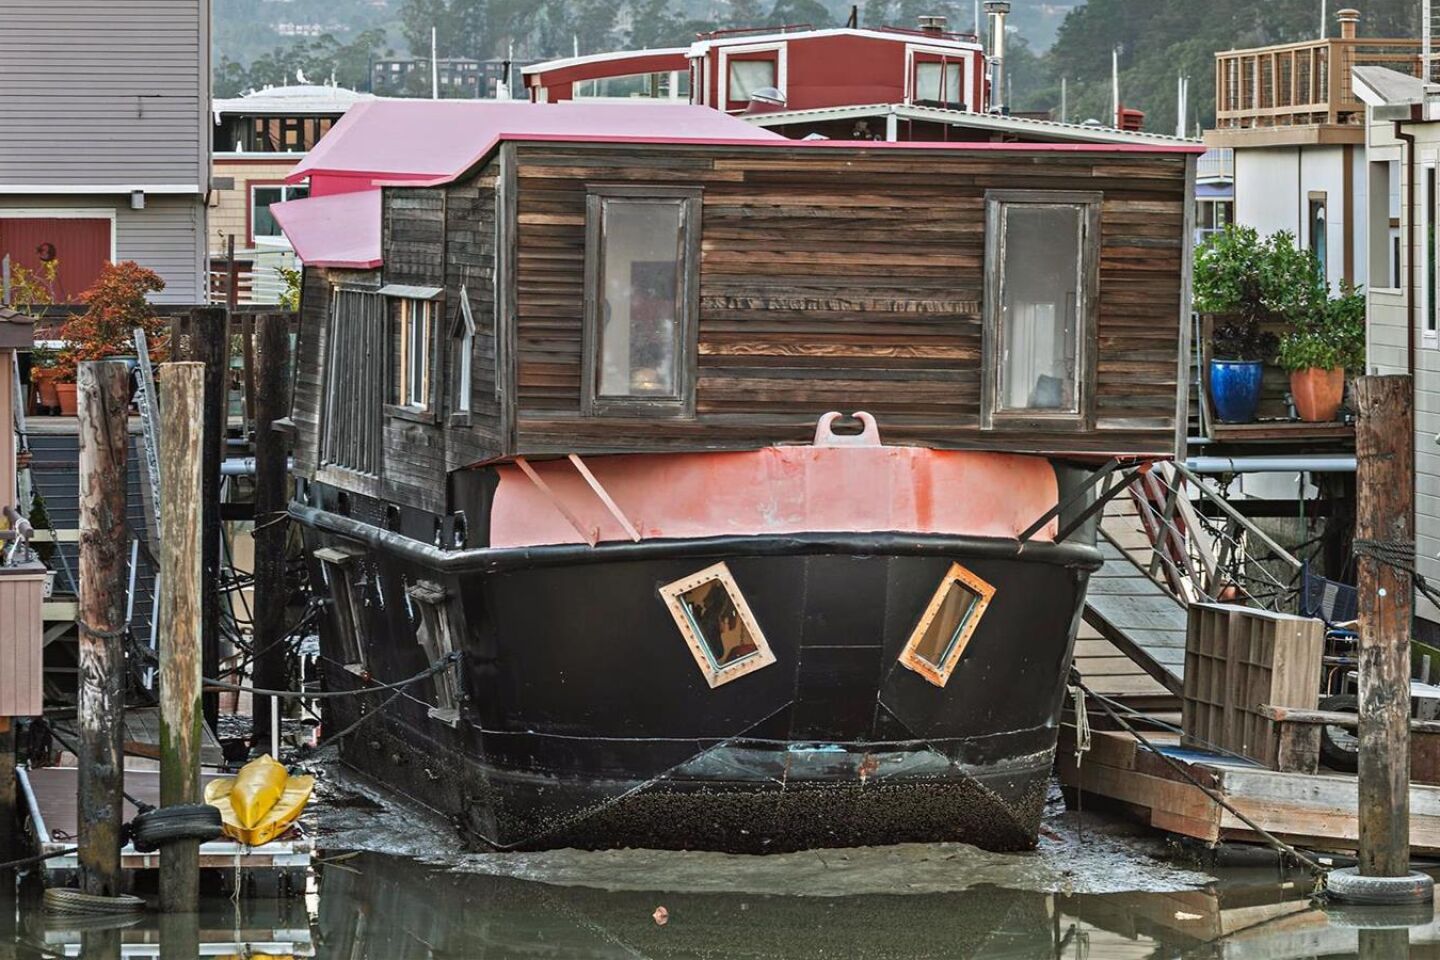 Shel Silverstein's former houseboat